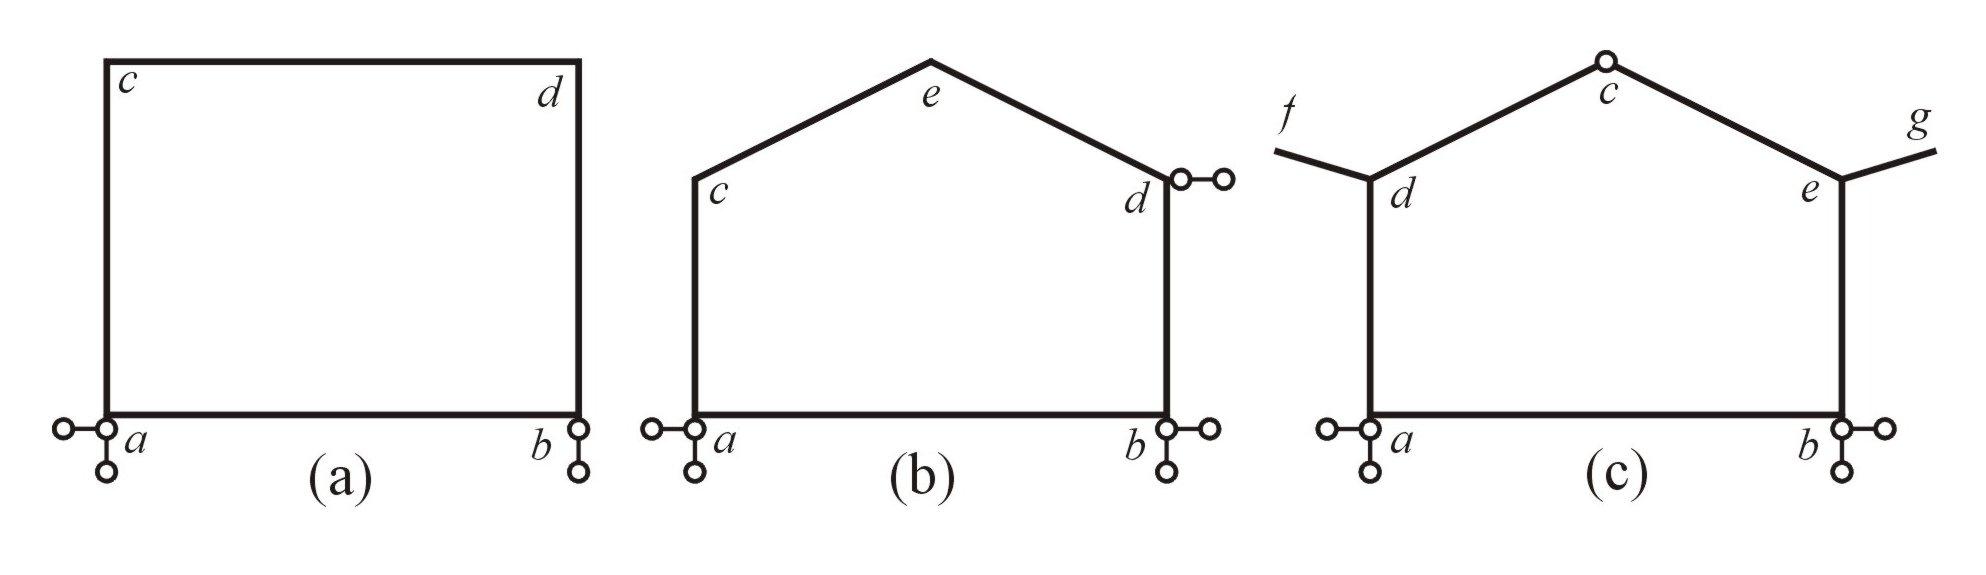 Druhy rovinných rámů Rámy : ) prvoúhlé () b) kosoúhlé (b), (c) c) rozvětvené (c) d) uzvřené (), (b),